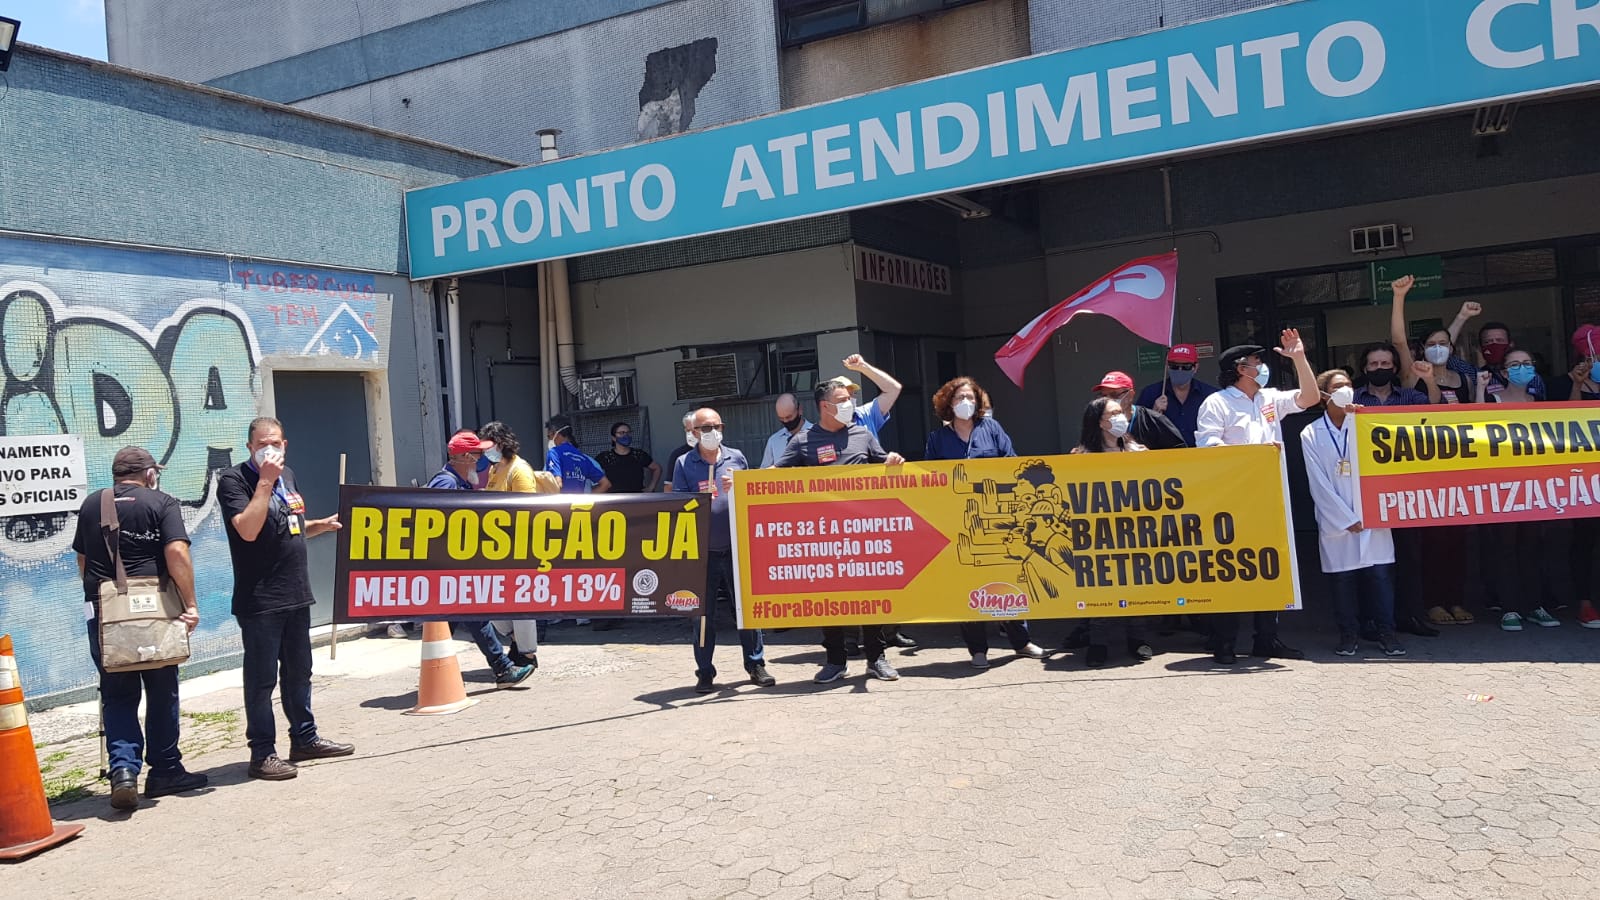  Ato em defesa do Pronto Atendimento Cruzeiro do Sul denuncia desmonte no SUS